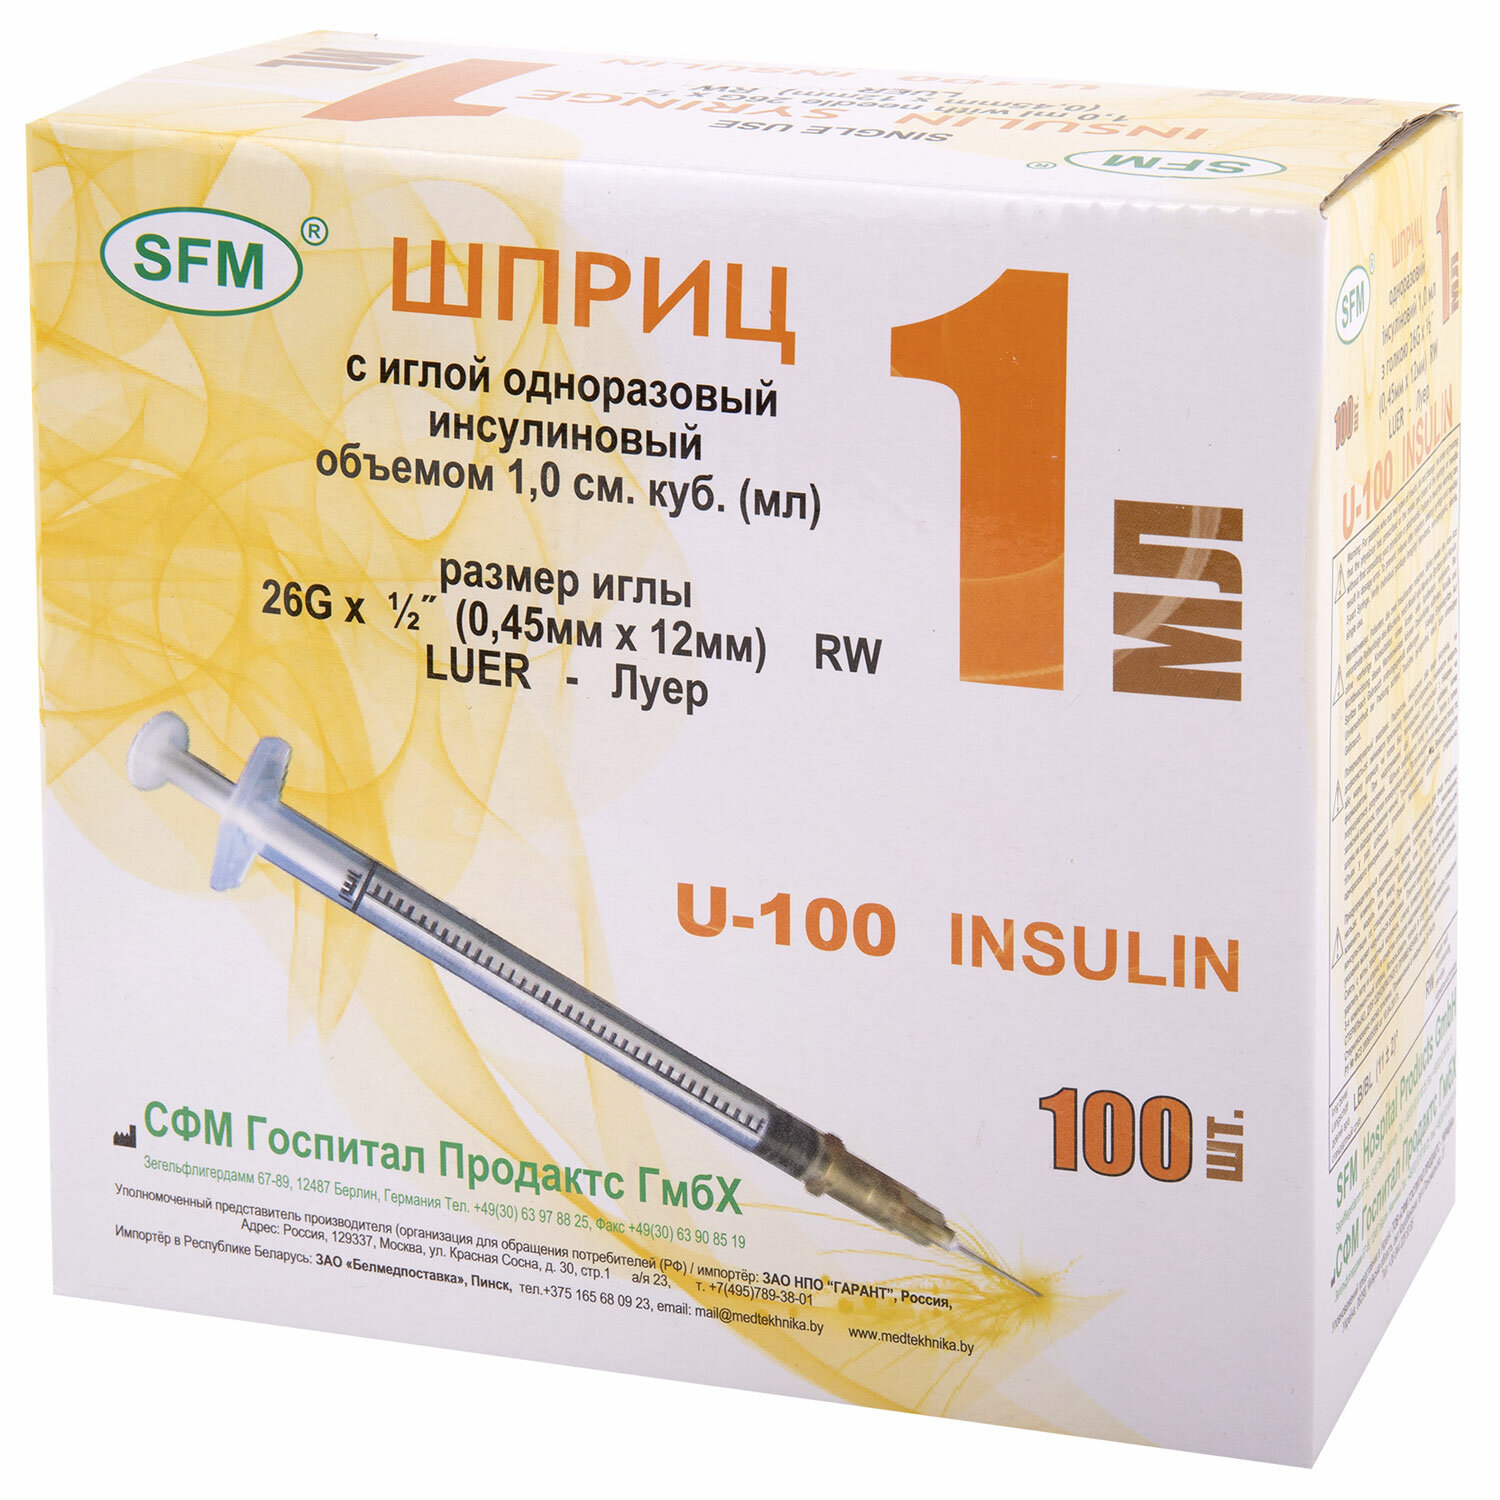 Шприц инсулиновый SFM 534208, комплект 2 упаковки по 100 шт.